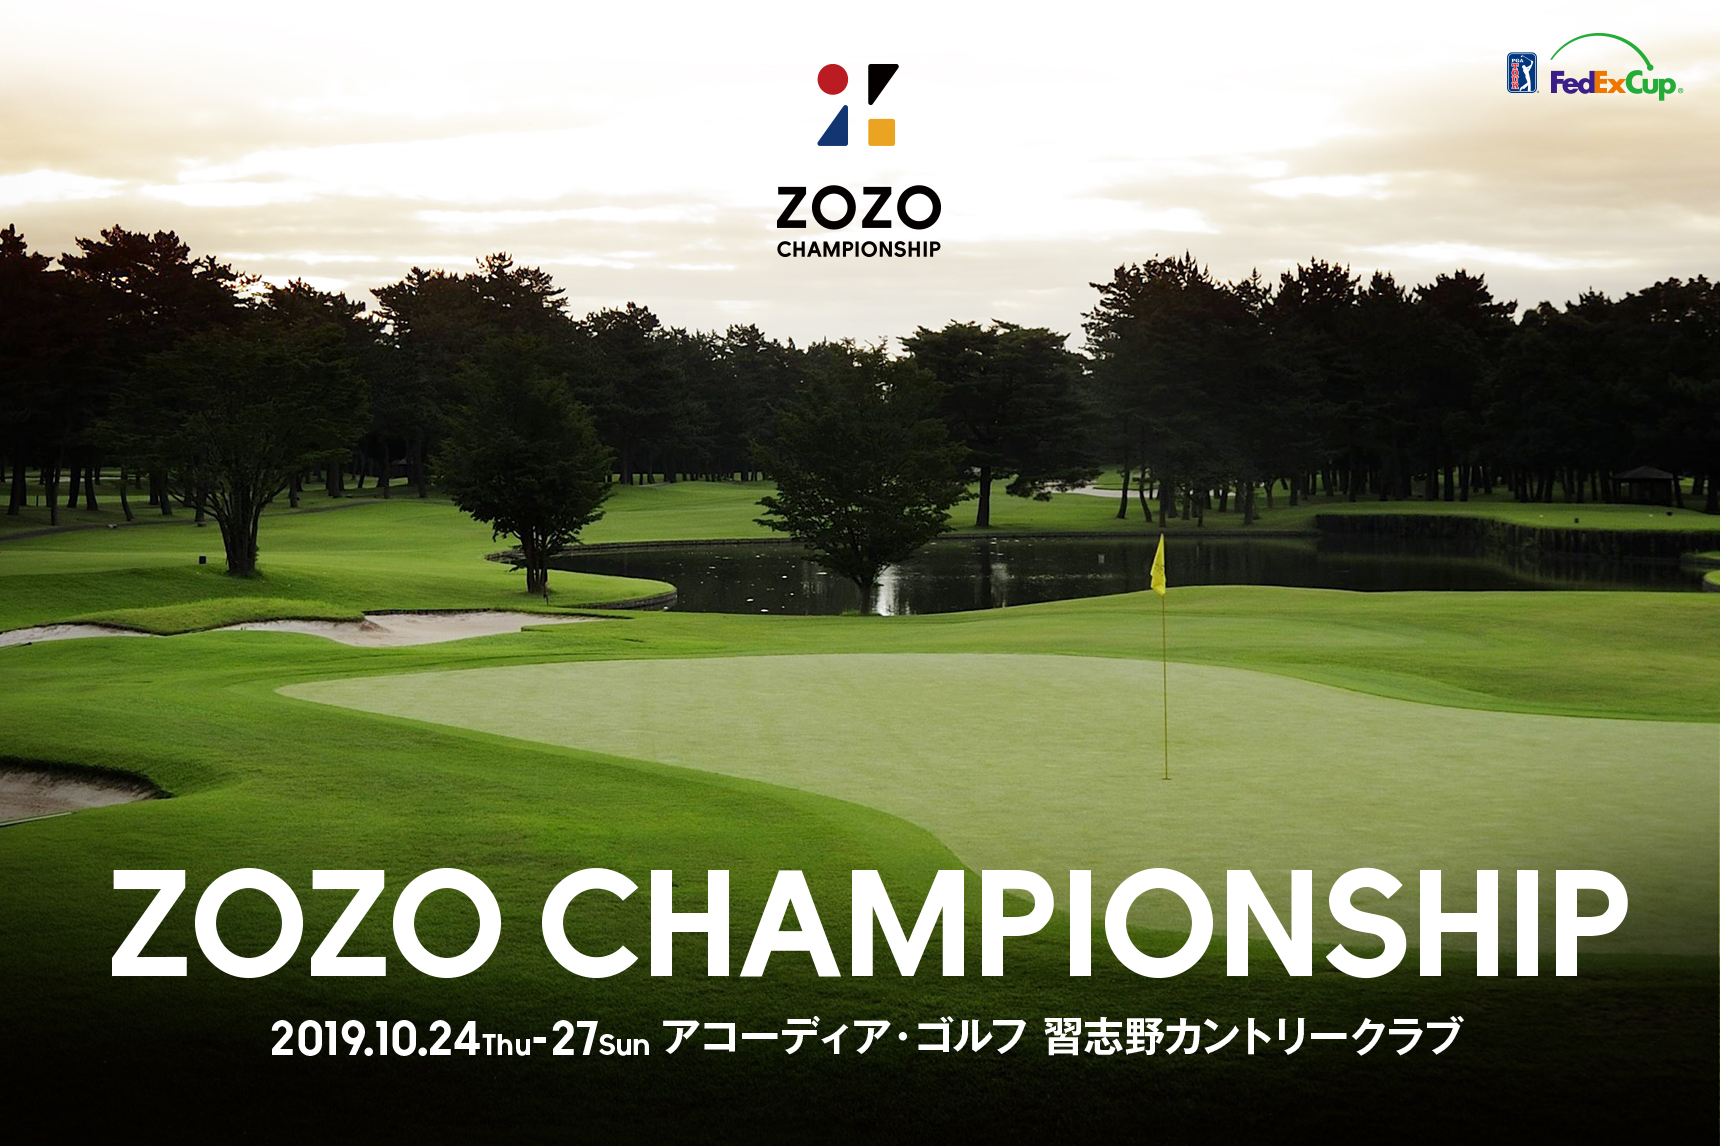 超大特価 zozo championship チャンピオンシップ　チケット 2022 少年漫画